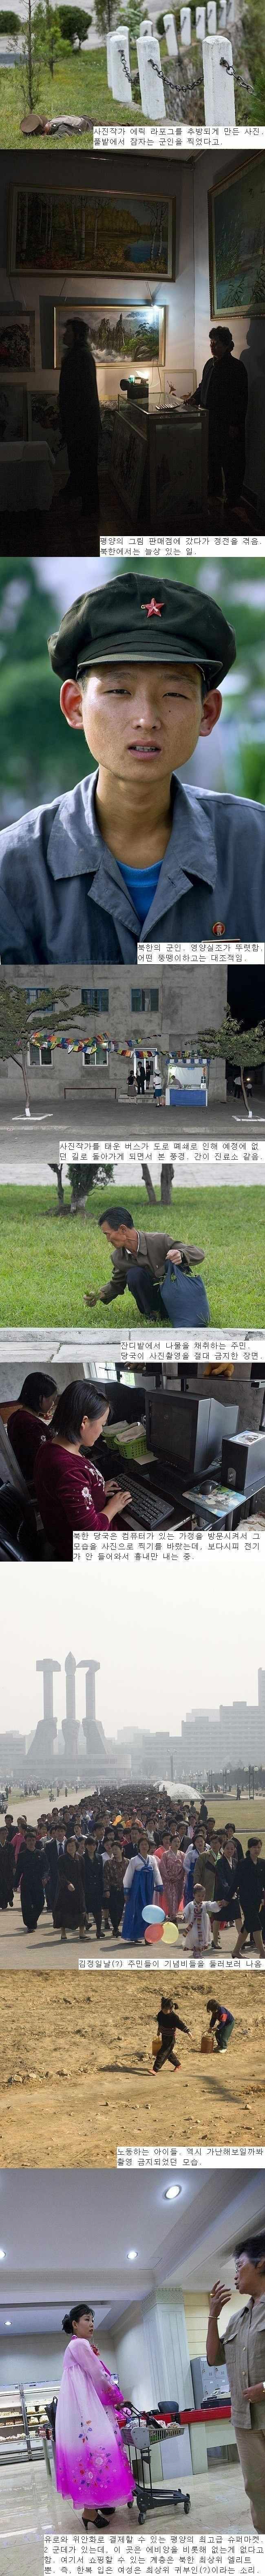 요즘 북한 주민들 근황